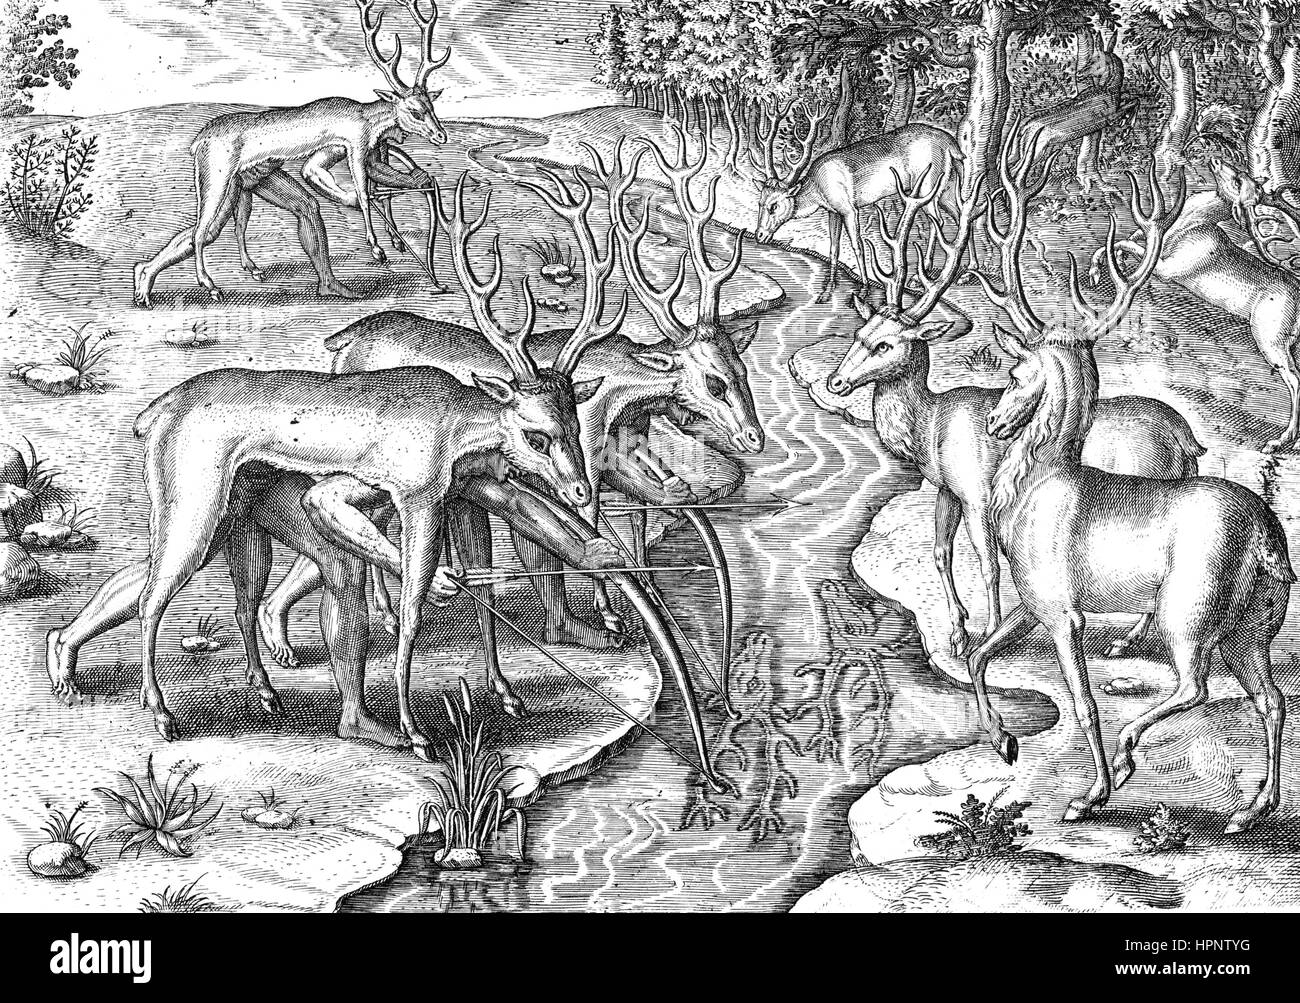 JOHANN THEODOR de BRY (1561-1623), deutscher Verleger und Kupferstecher. Seine Holzstich zeigt Indianer jagen versteckt in Tierhäuten Stockfoto